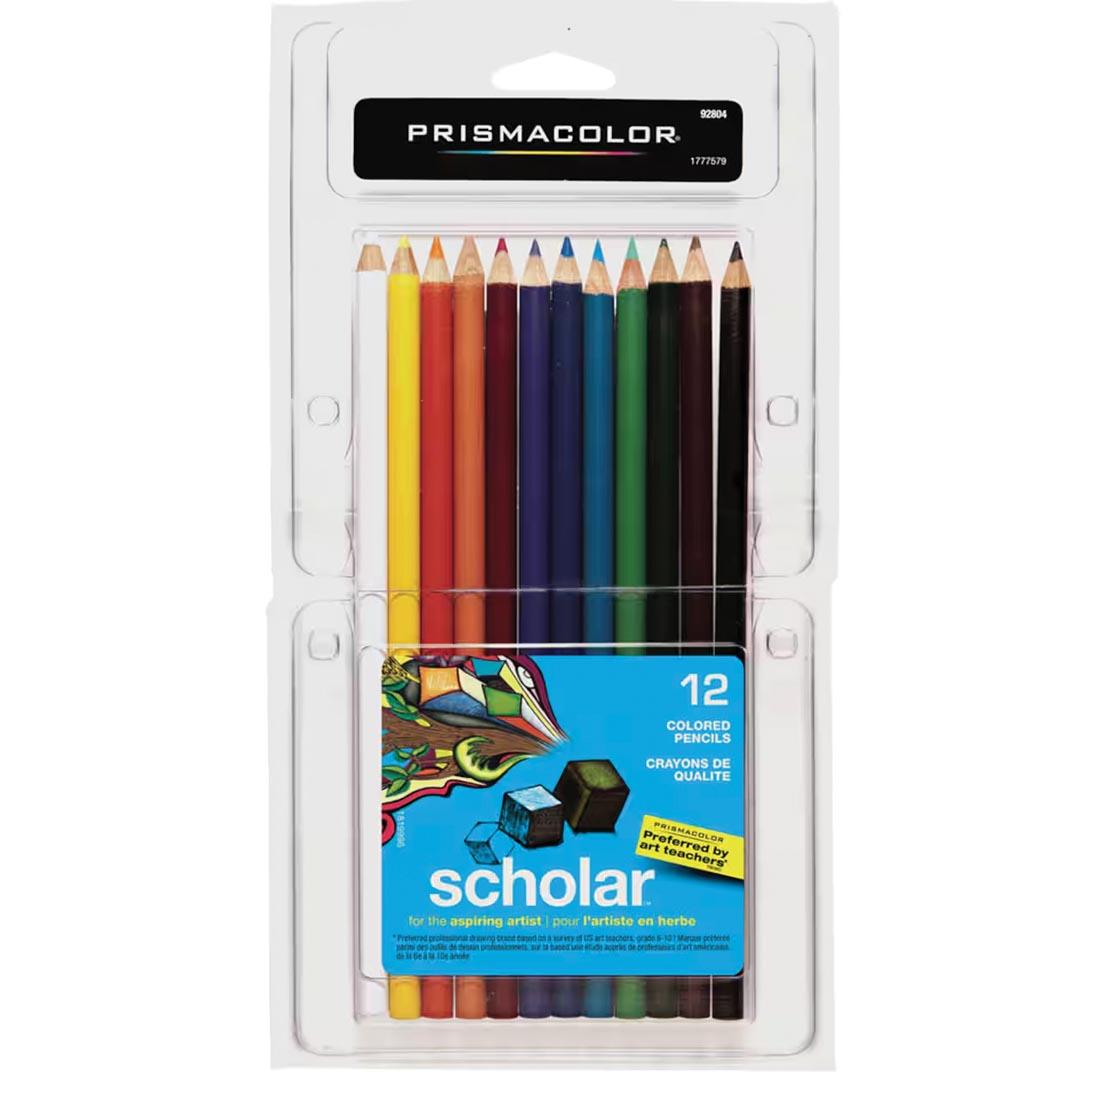 Prismacolor Scholar Colored Pencils 12-Color Set